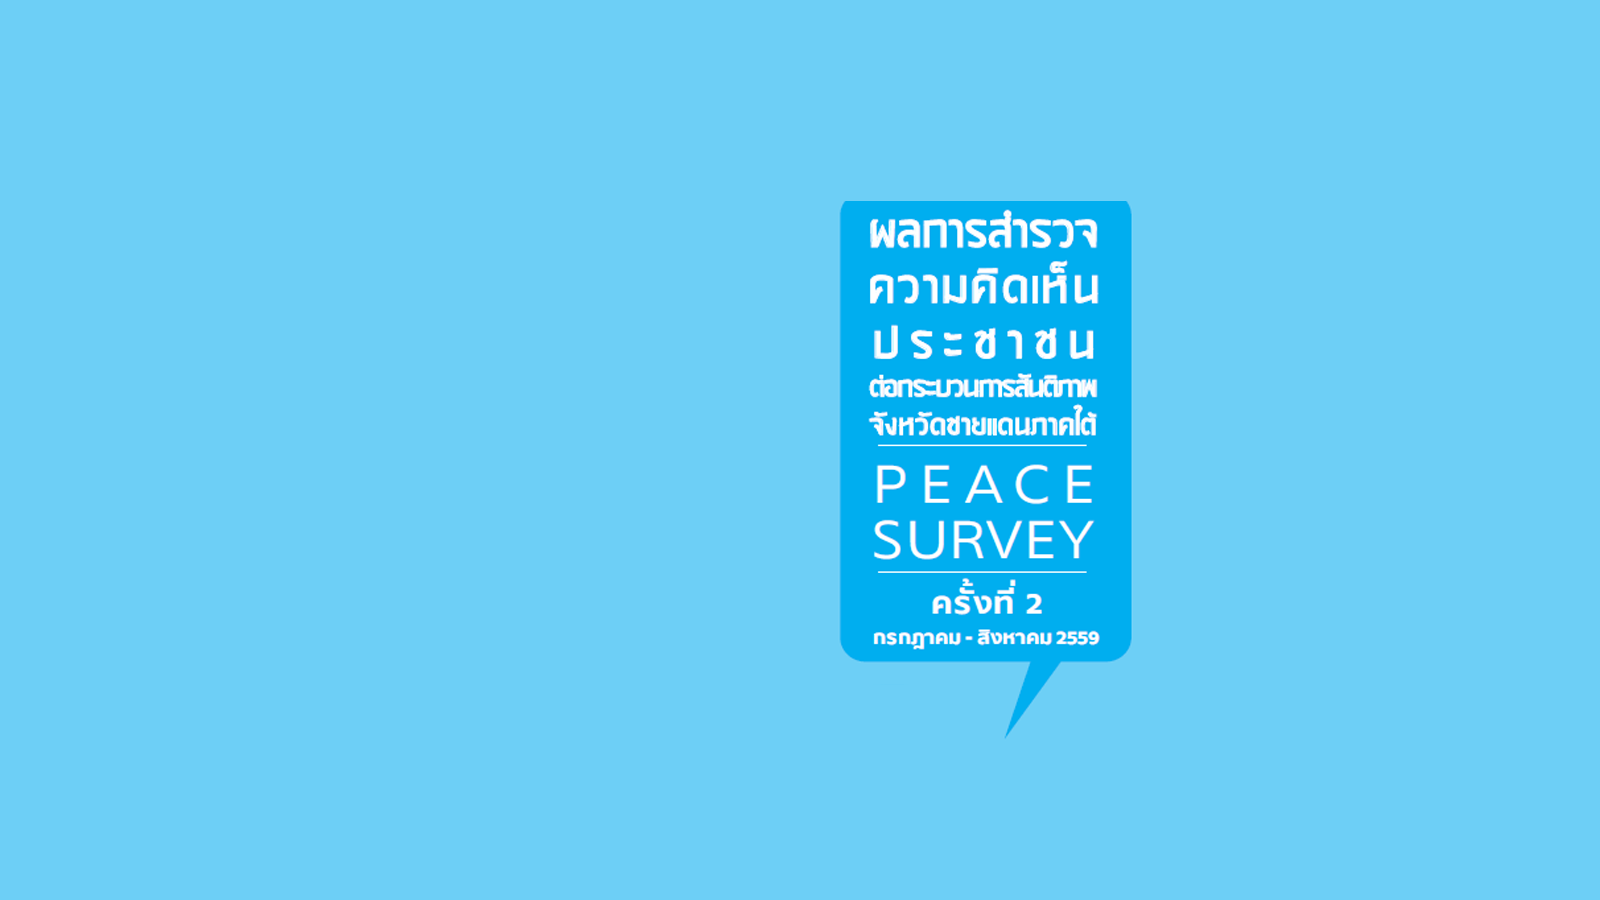 ผลการสำรวจความคิดเห็นประชาชนต่อกระบวนการสันติภาพจังหวัดชายแดนใต้ Peace Survey ครั้งที่ 2 กรกฎาคม - สิงหาคม 2559